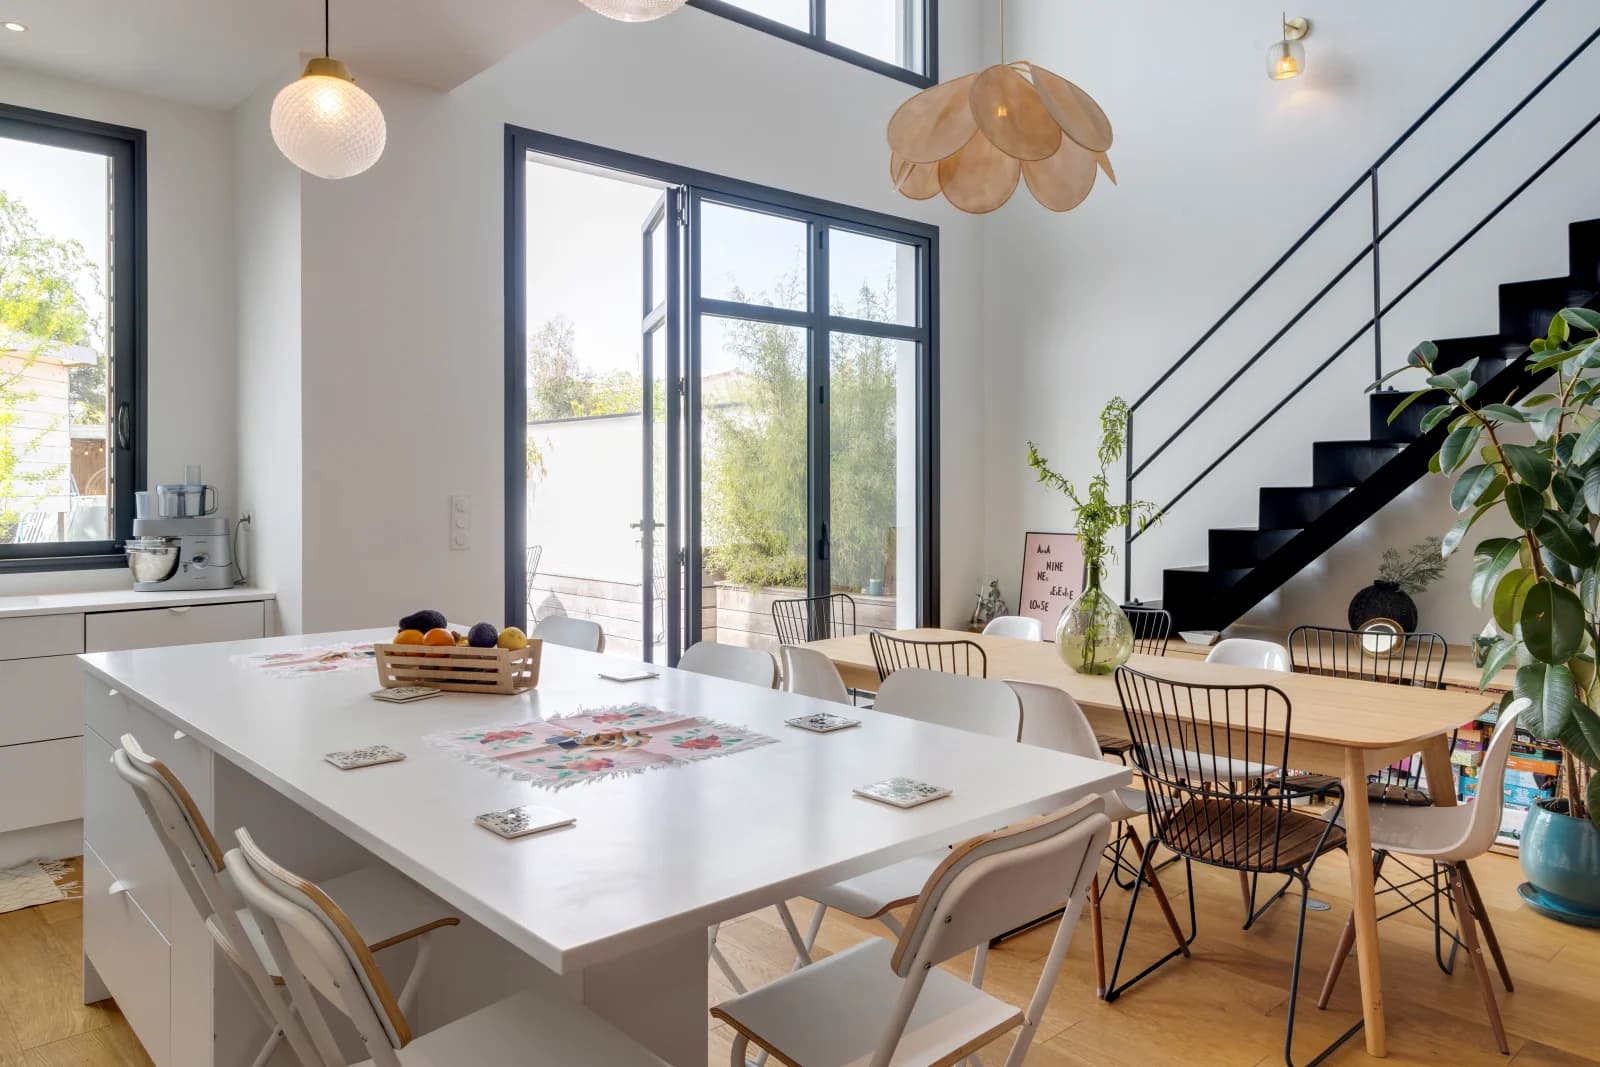 Comedor dentro Casa de cristal diseñada por un arquitecto con terraza y jardín - 1